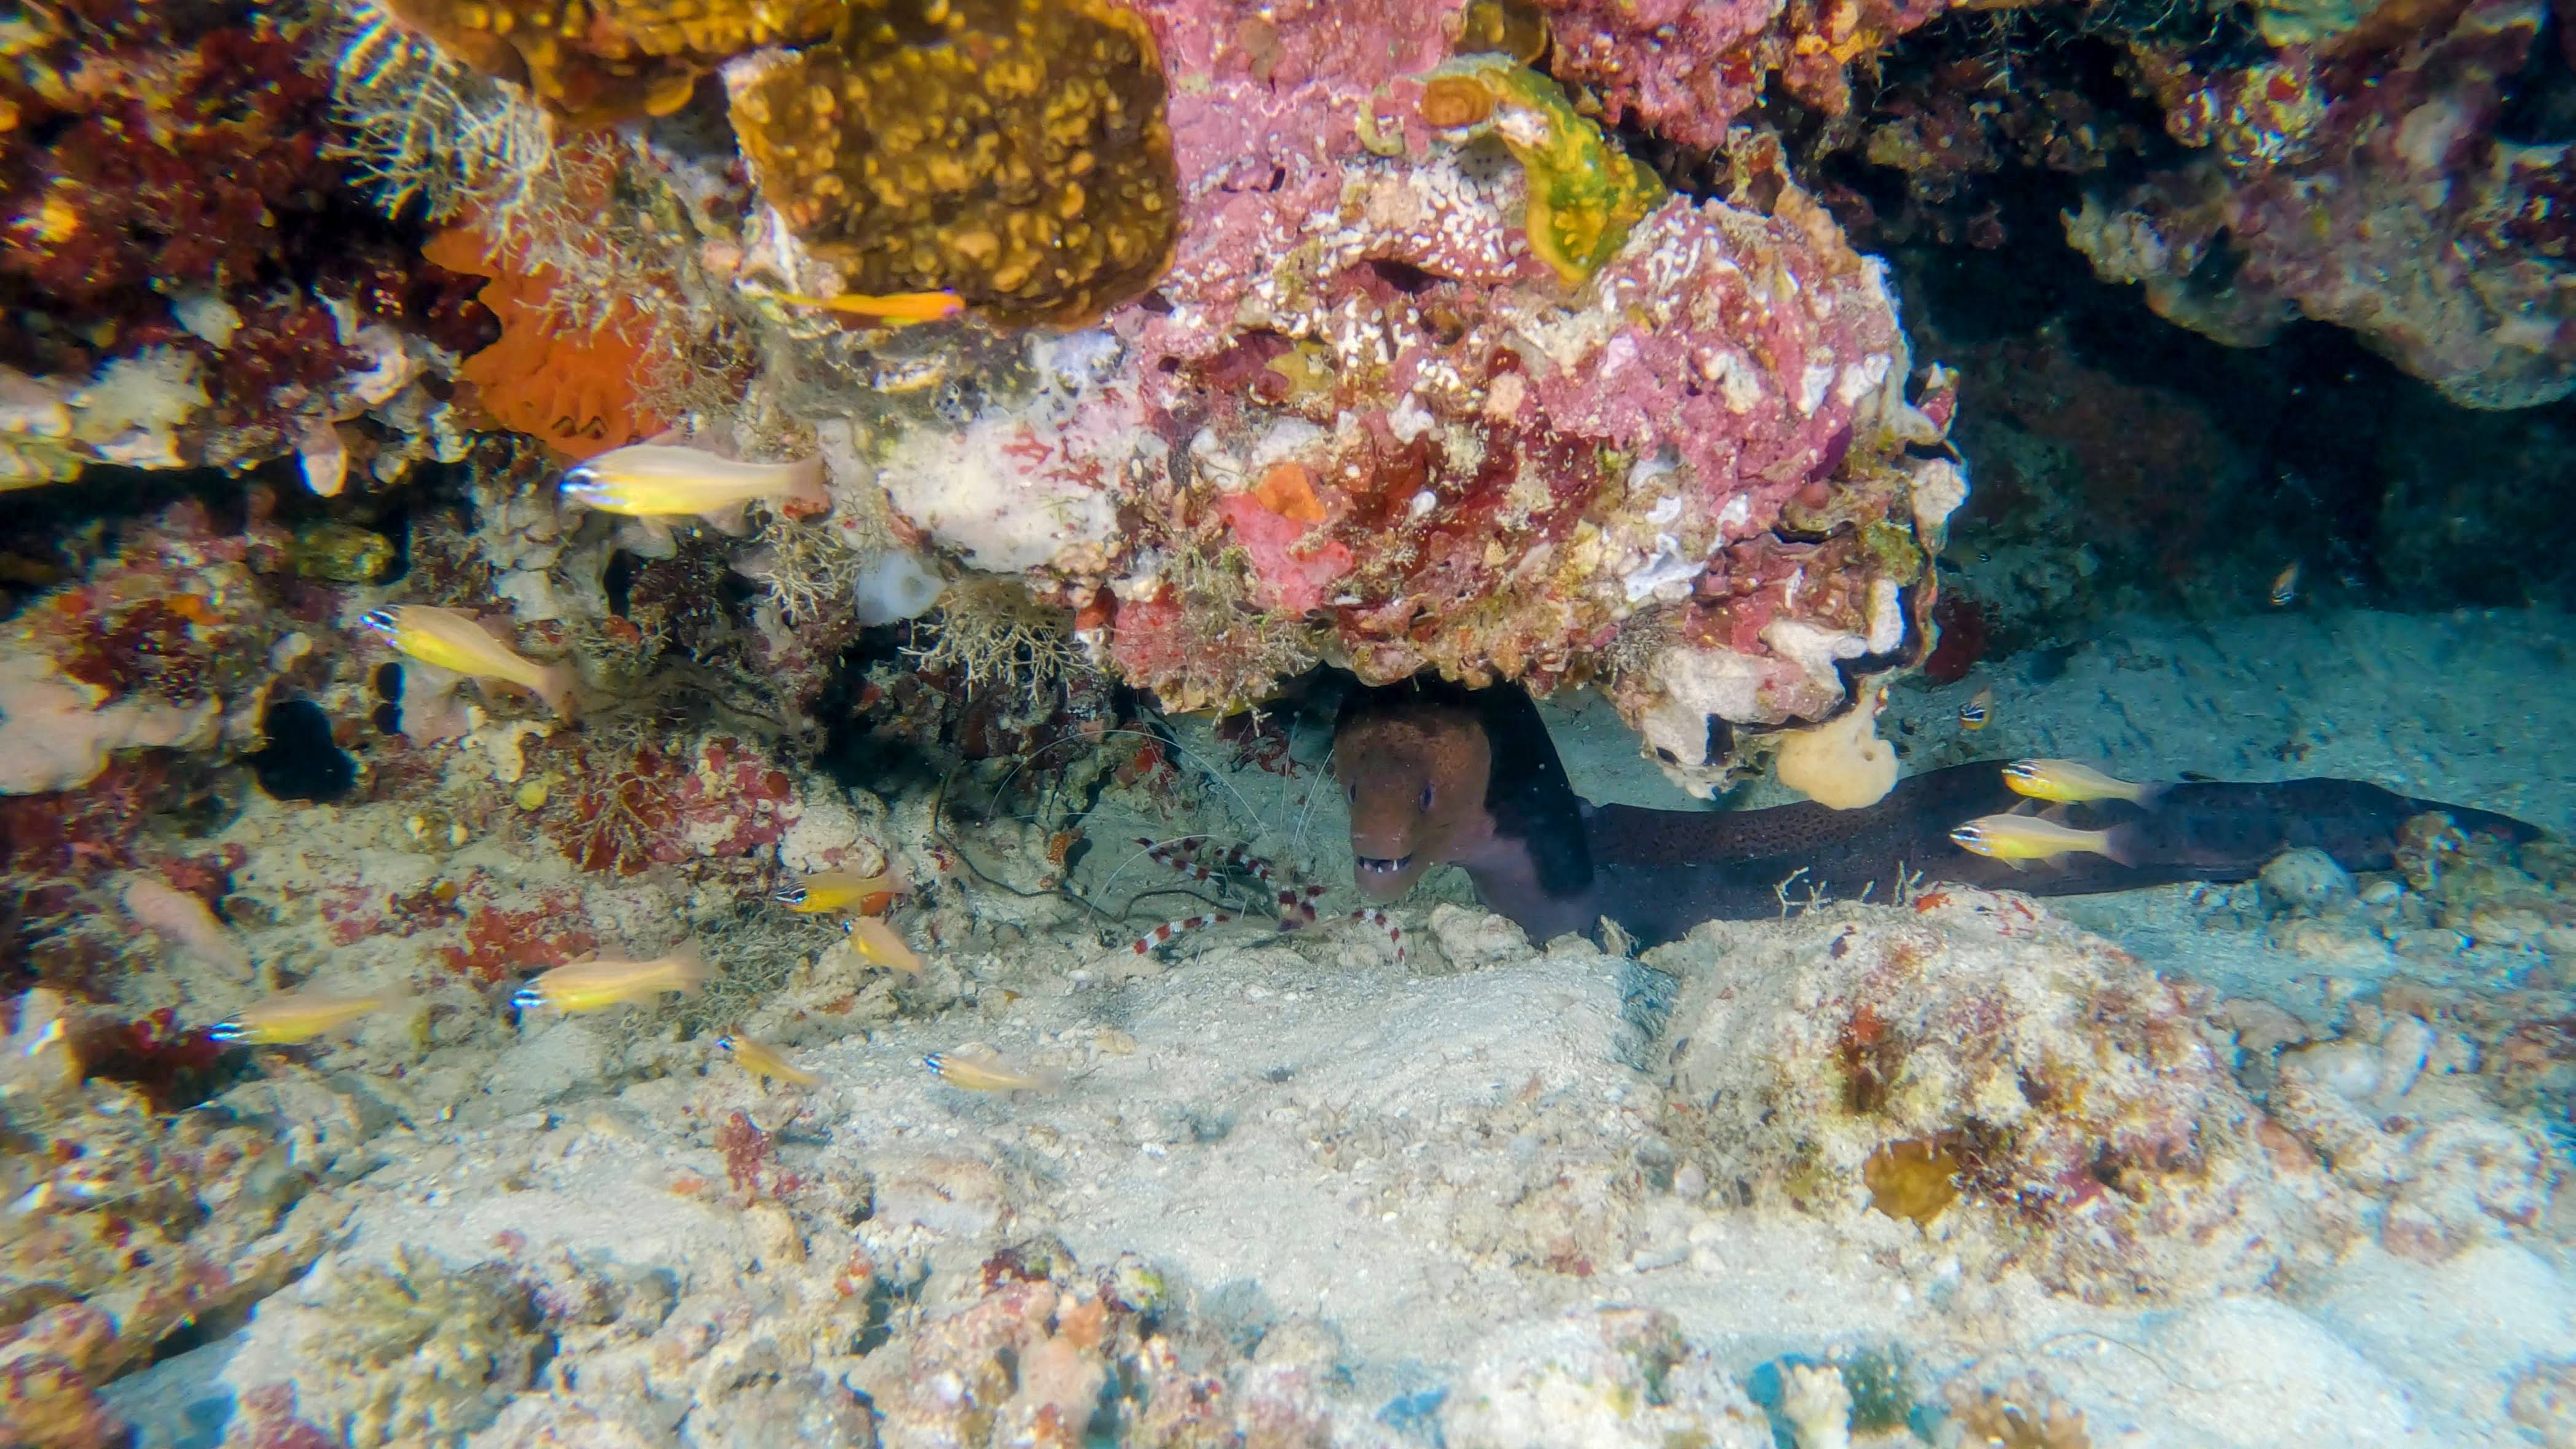 boxing-shrimps-moray-eel-maldives